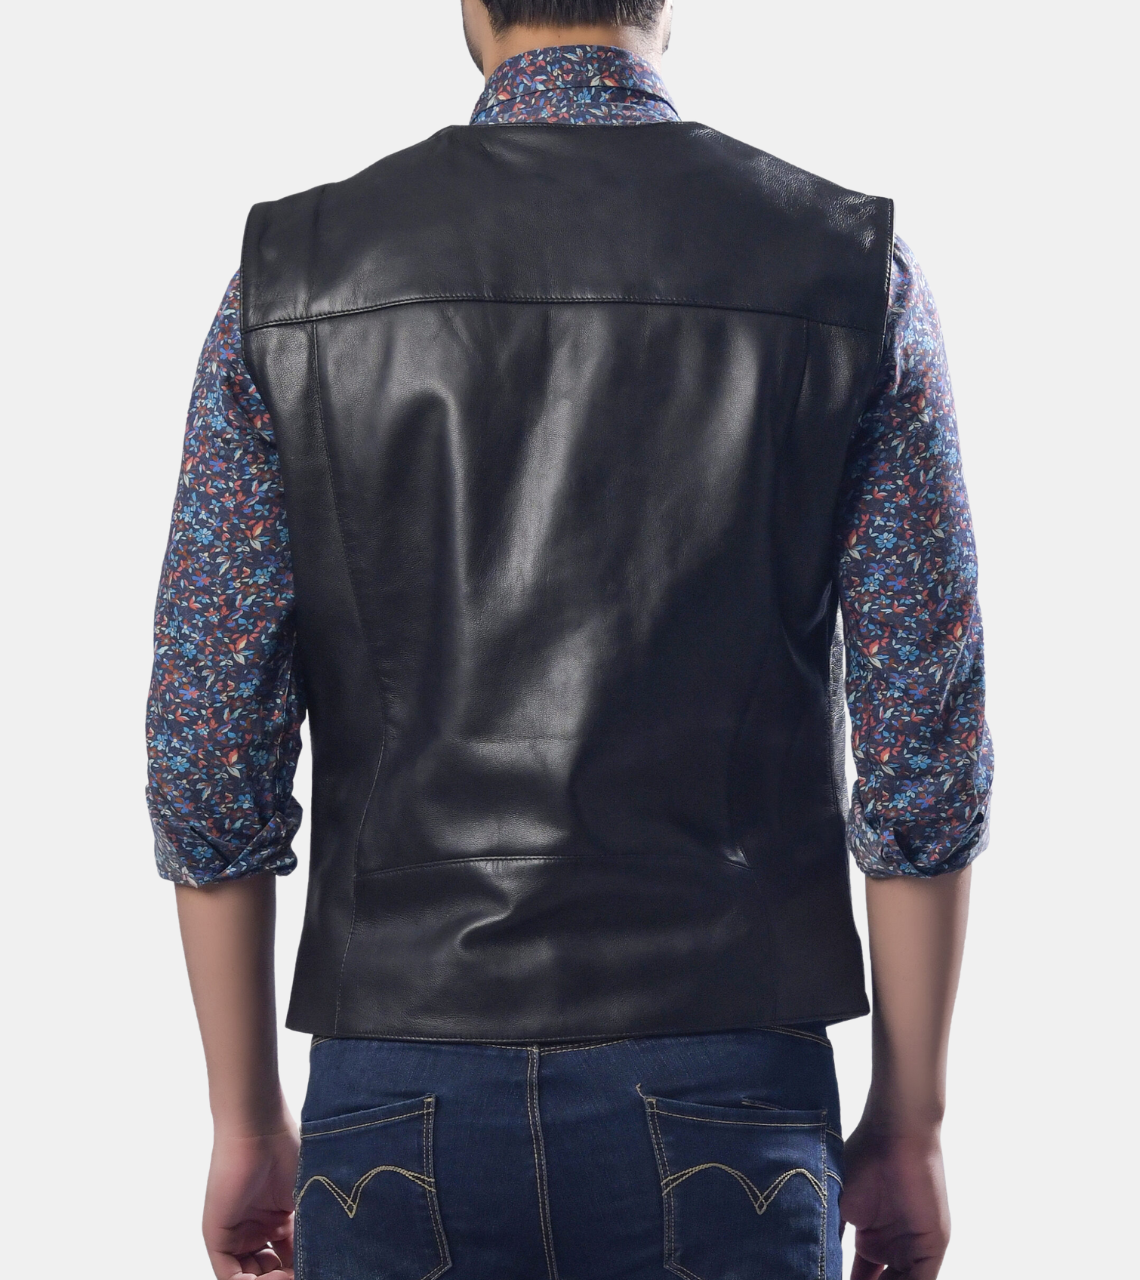  Marcel Men's Black Leather Vest Back